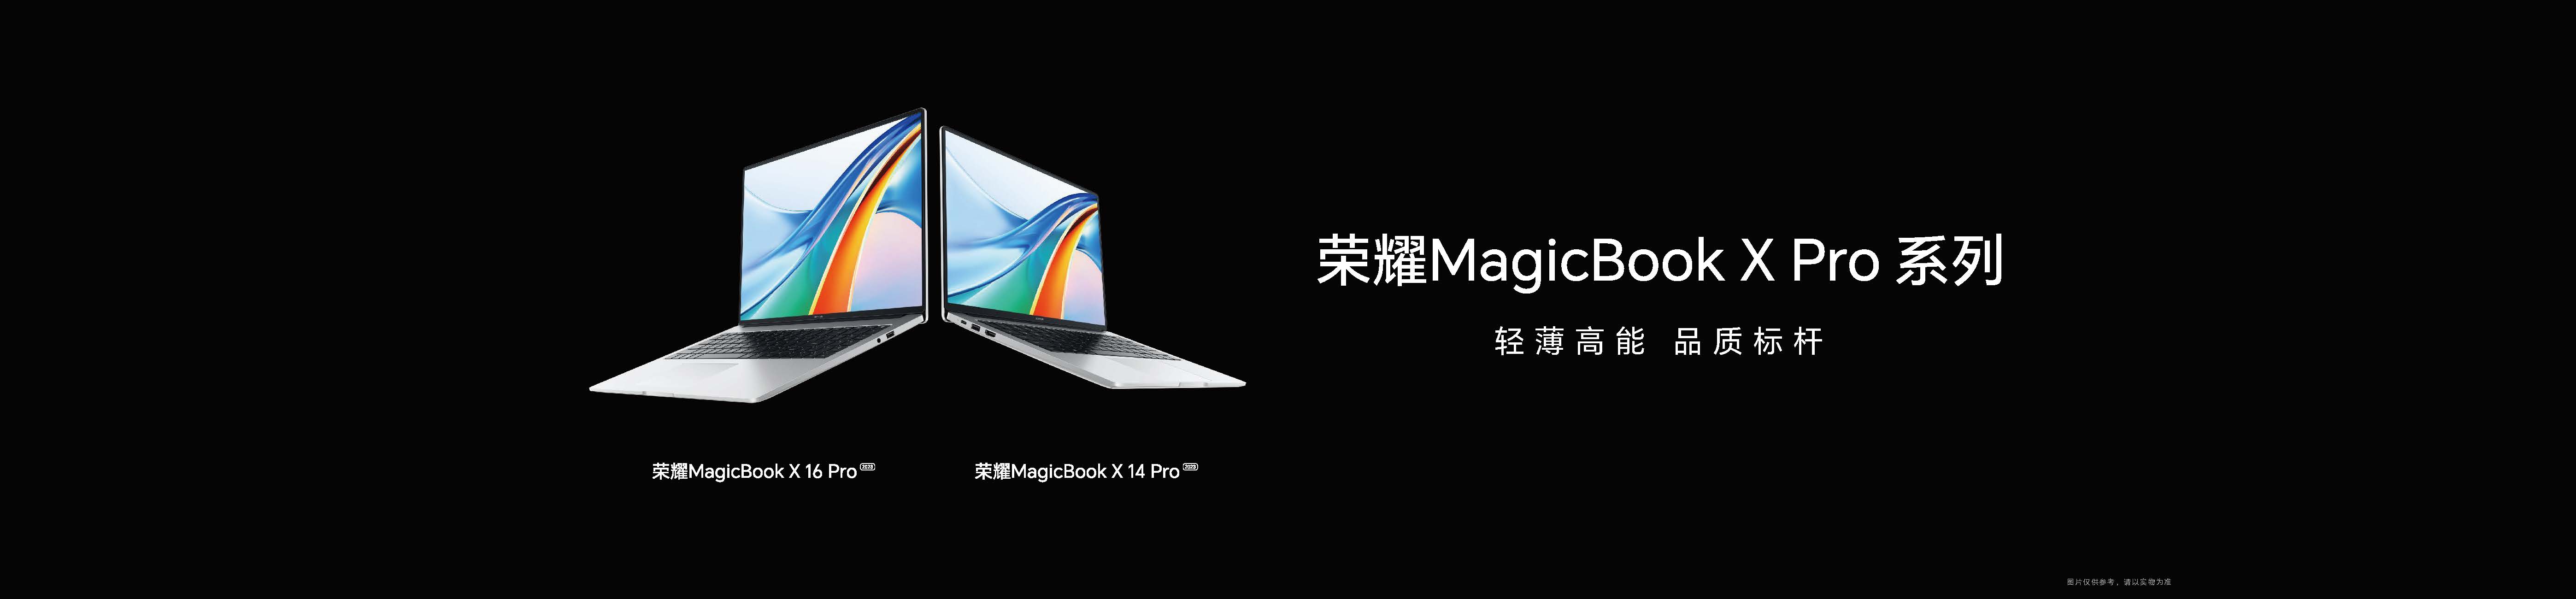 荣耀MagicBook X Pro系列发布  轻薄高能打造跃级体验